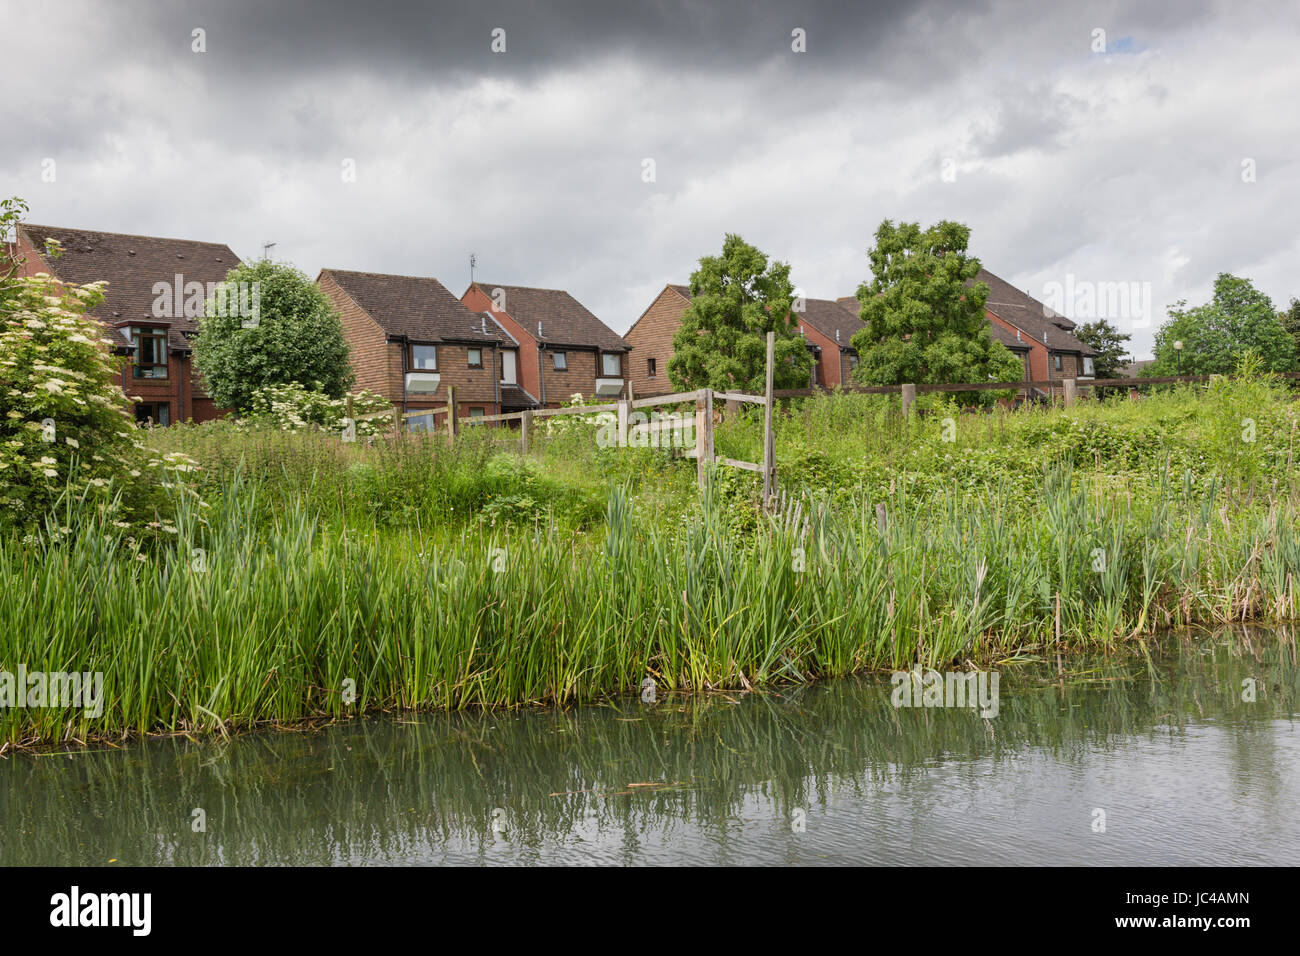 Case su un lato canale, sviluppo moderno, halifax hx6 2np West Midlands Black country uk Foto Stock